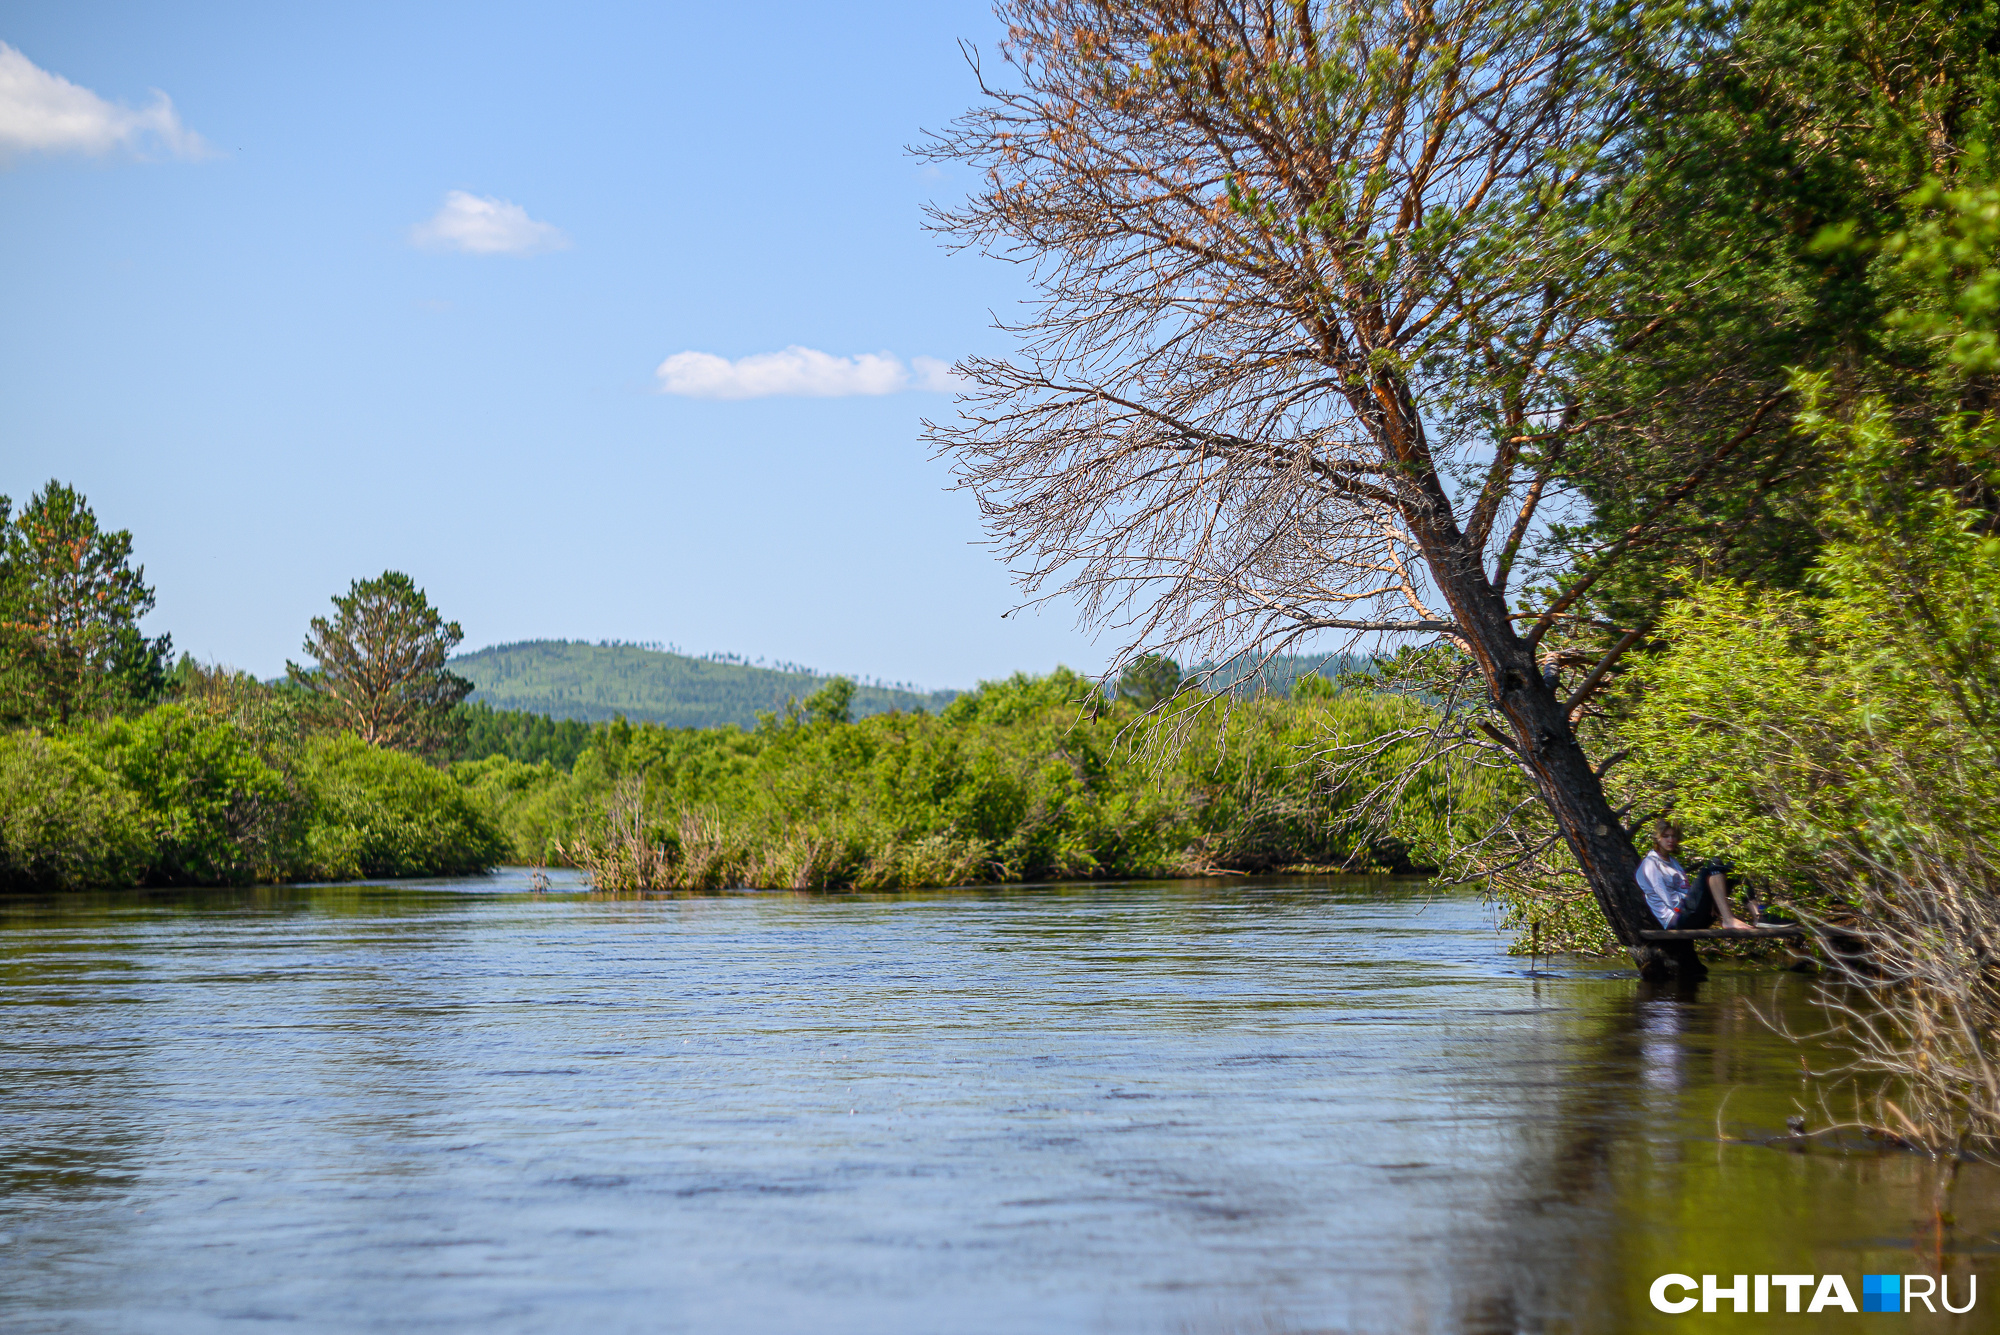 Река Хилок в «Тужи» бежит посреди круглых сопок и залитых травой лугов